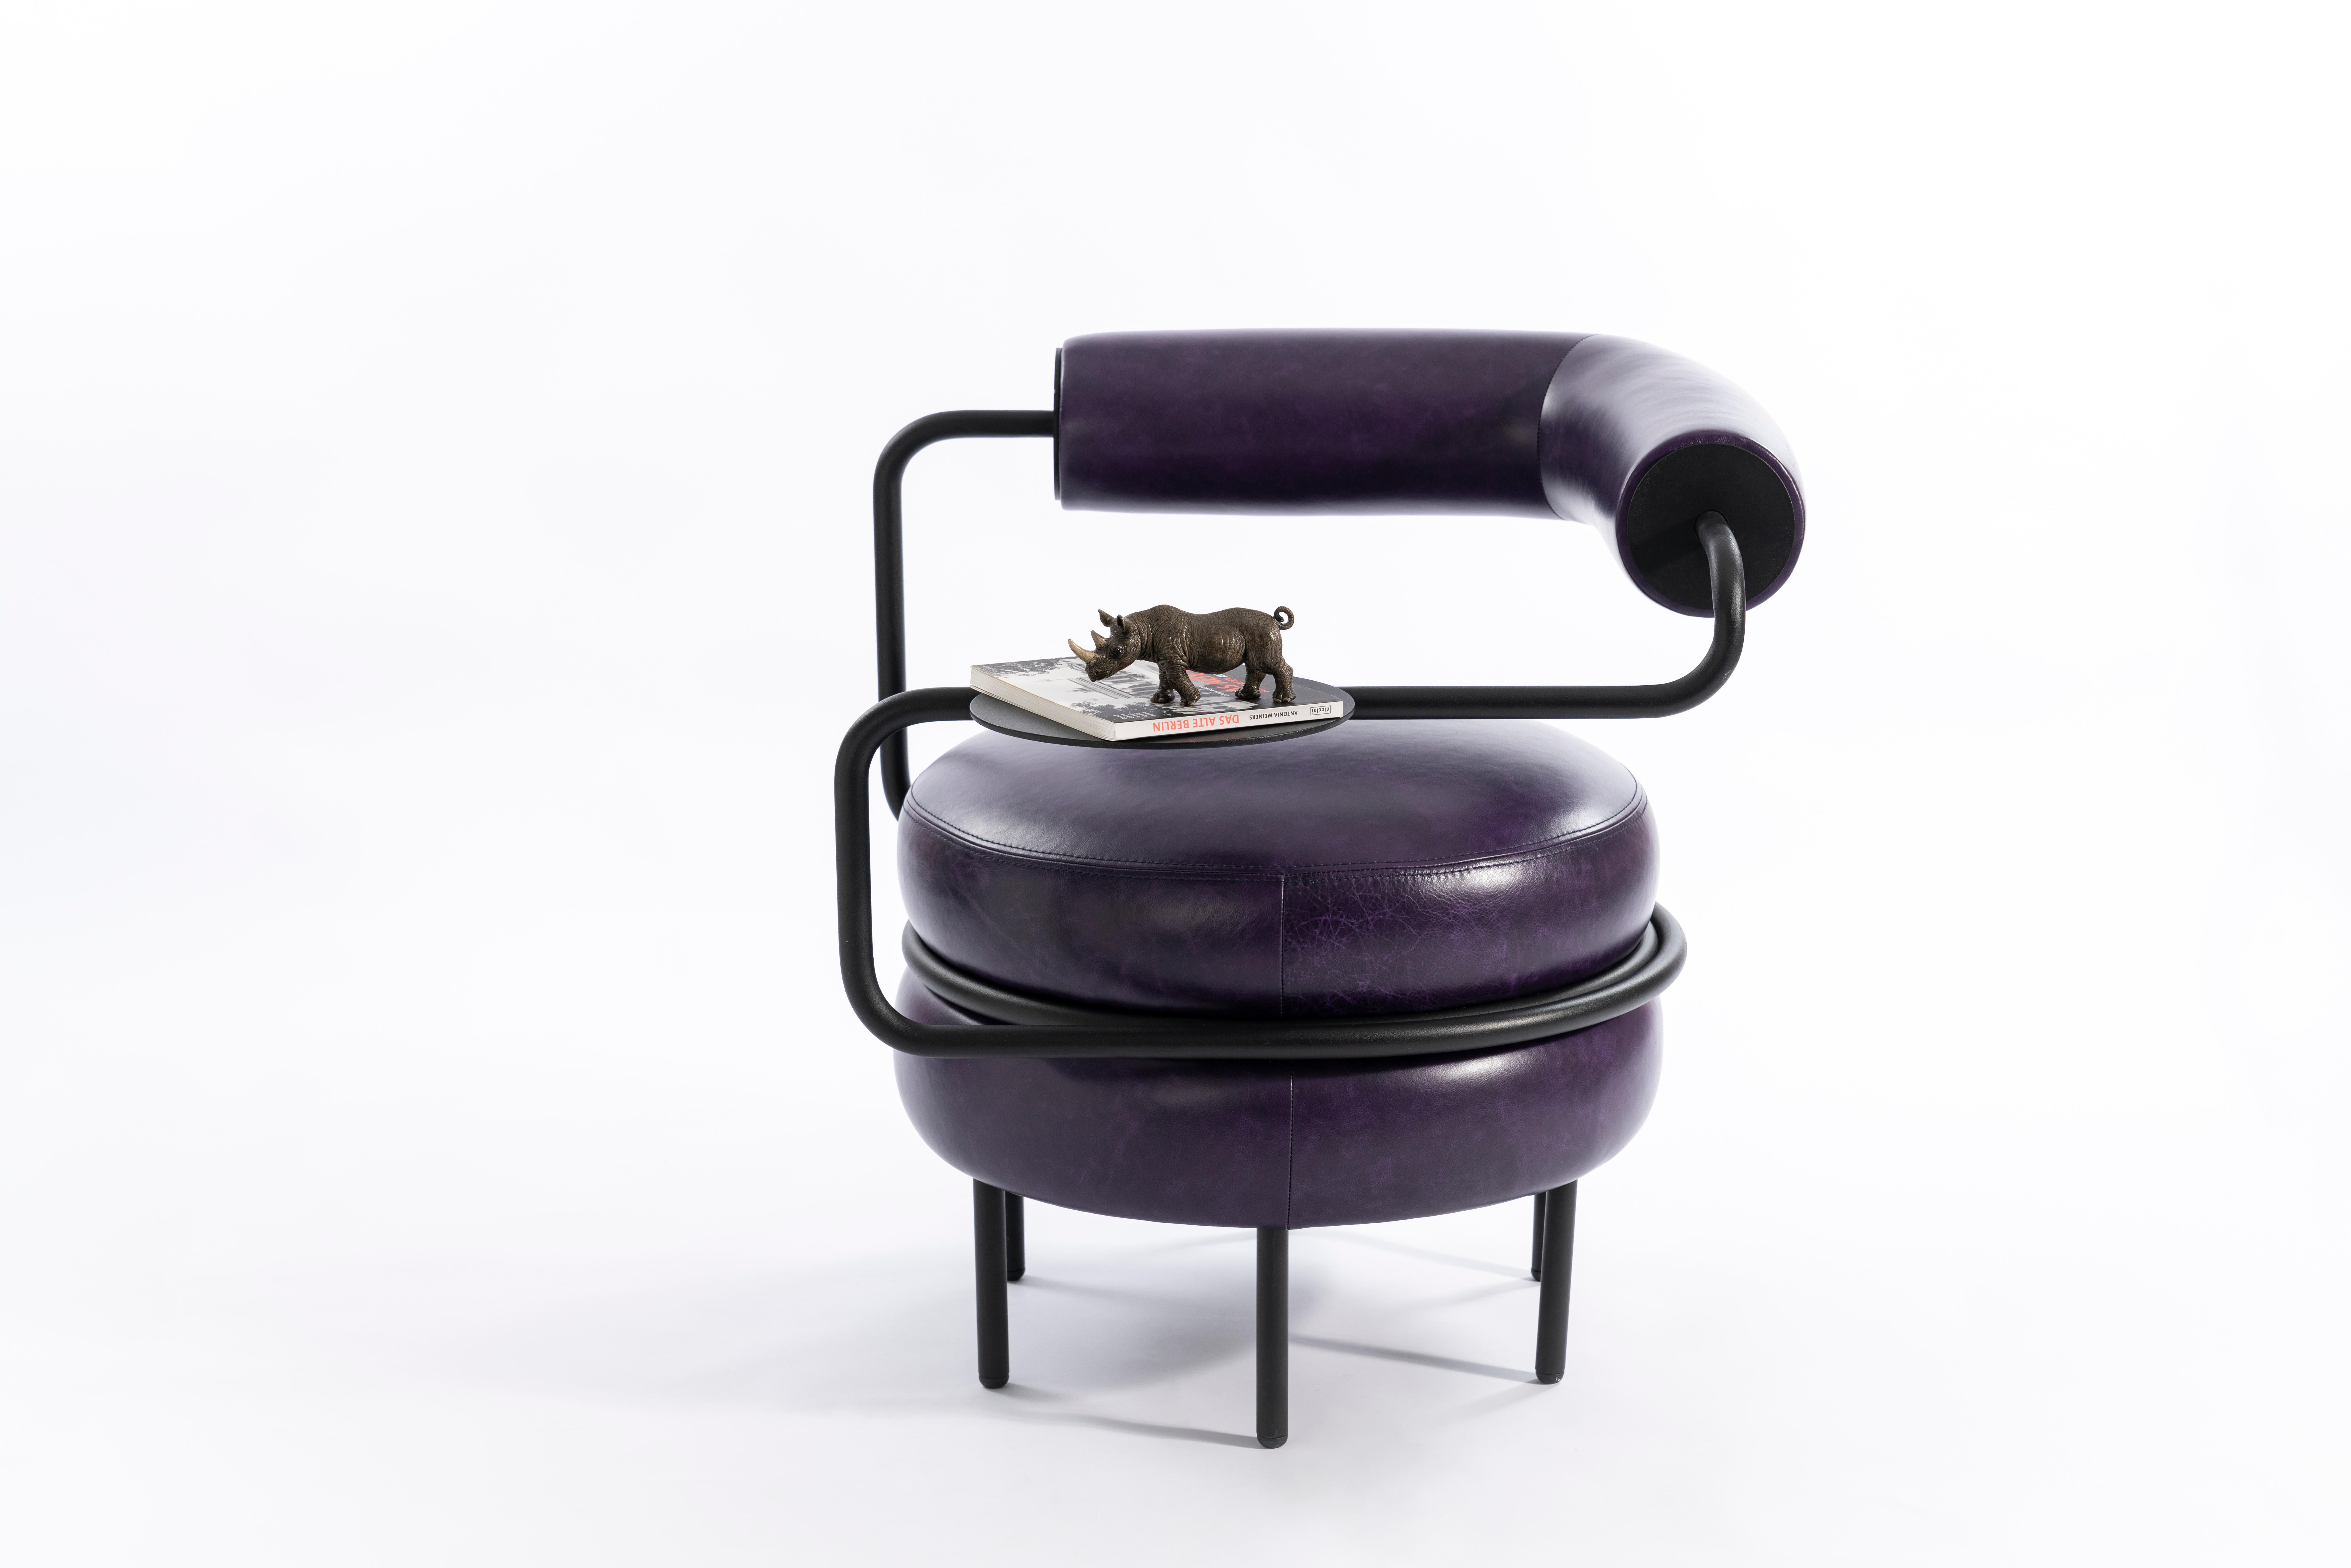 L'interprétation de KONTRA de Macaron. Fauteuil confortable de couleur violette.
Le fauteuil en cuir à un bras offre une assise confortable avec sa propre table d'appoint.